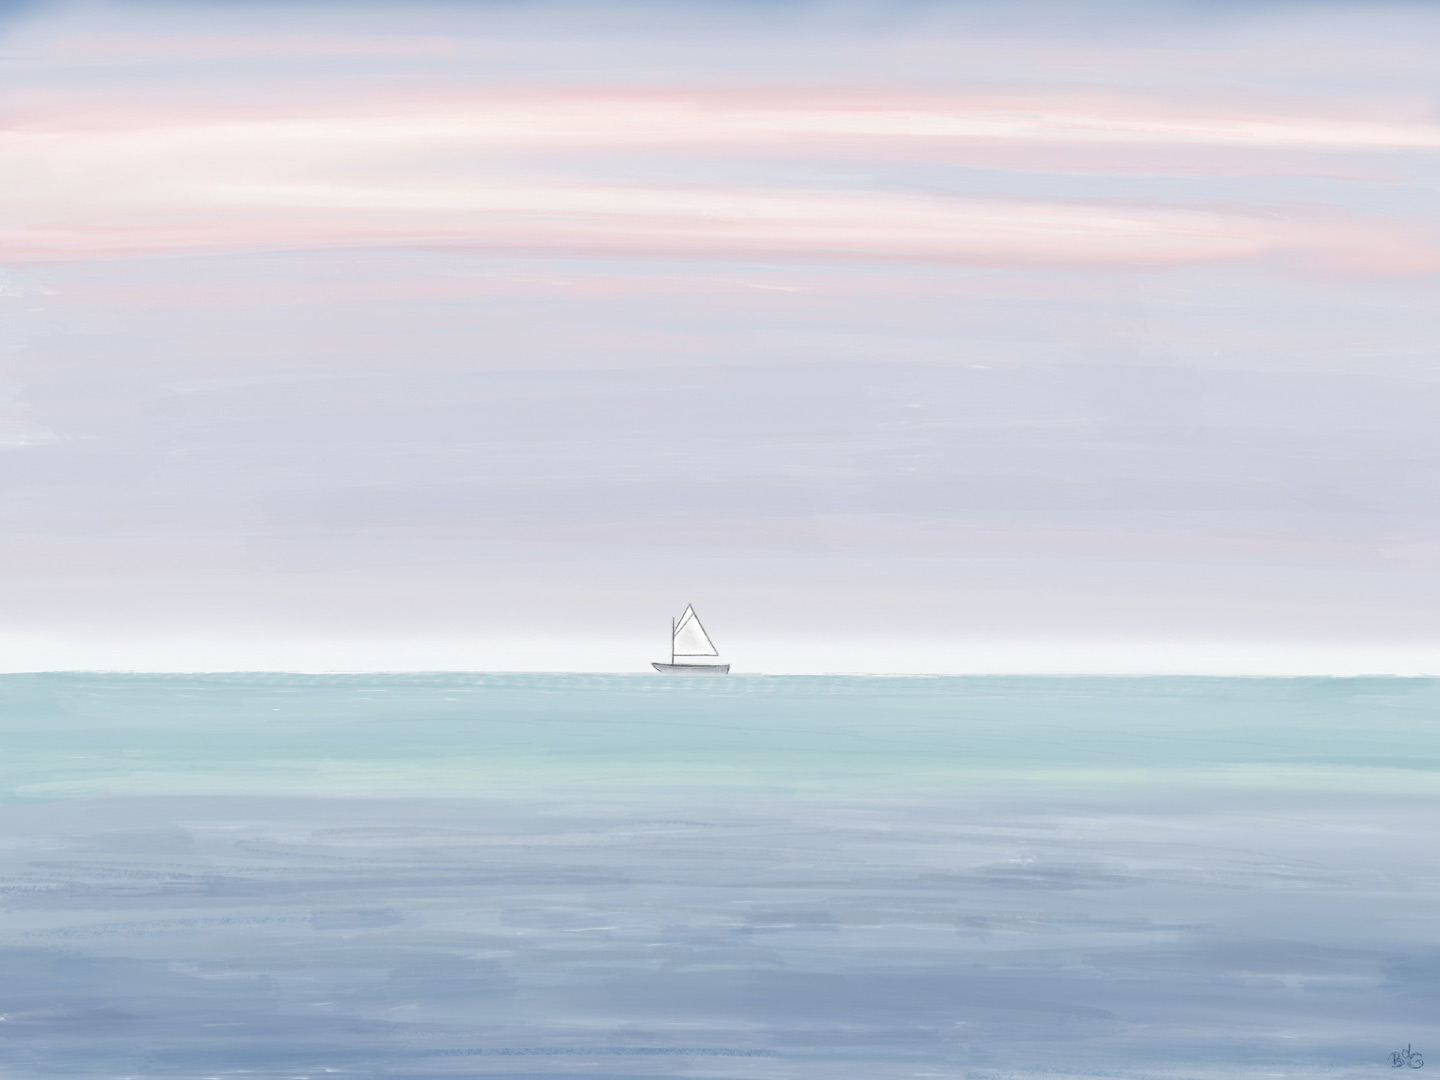 Little ship at sea illustration - Brenda de Groot